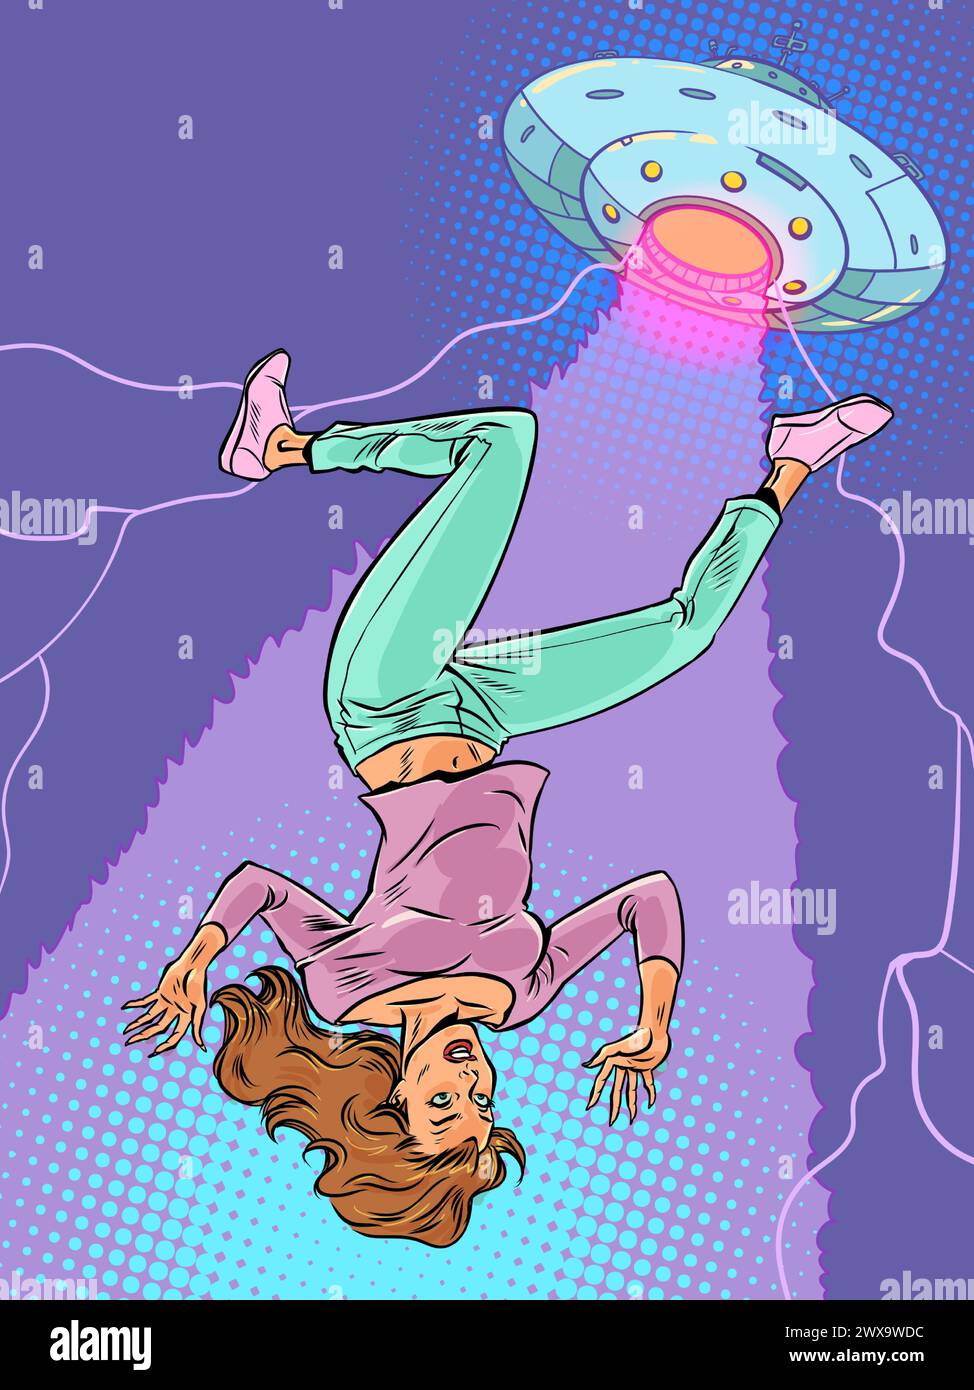 Eine Frau wird auf einem Balken von einer kosmischen Untertasse hochgehoben. Invasion von Alien und Entführung der Erde. Erforschung anderer Lebensformen im Universum. Pop Art Retro Vec Stock Vektor